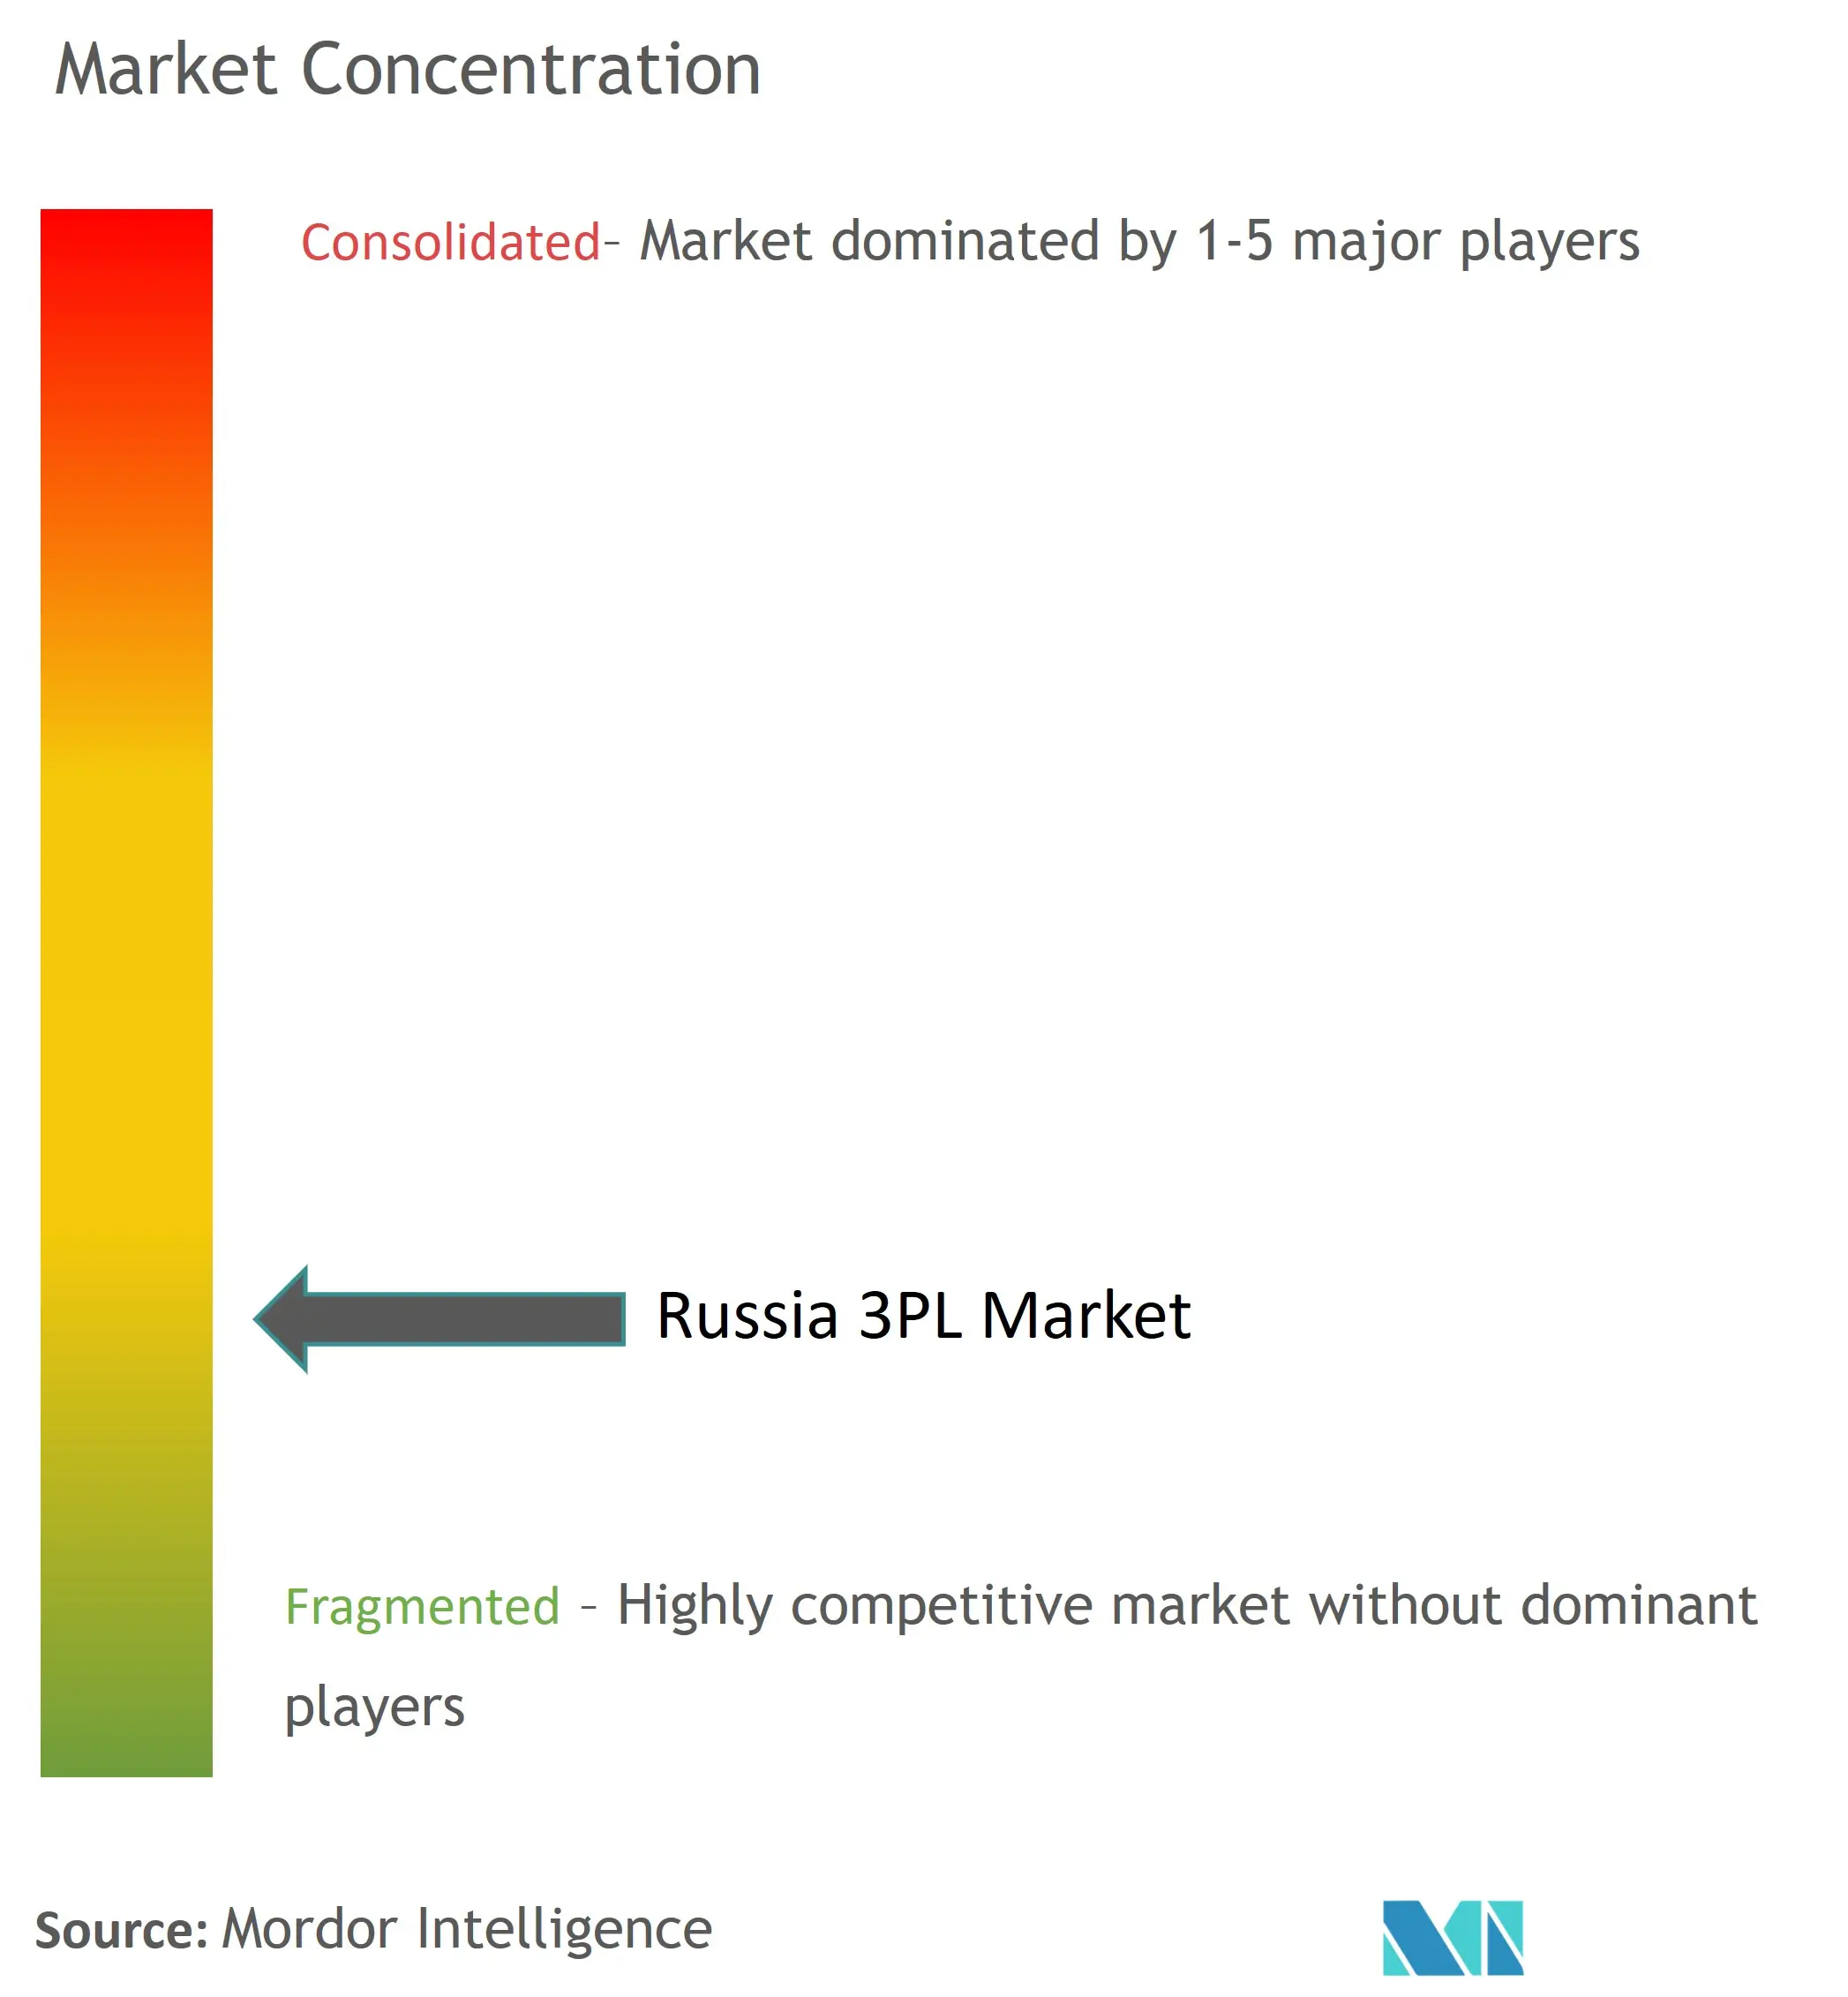 Russia 3PL Market Concentration